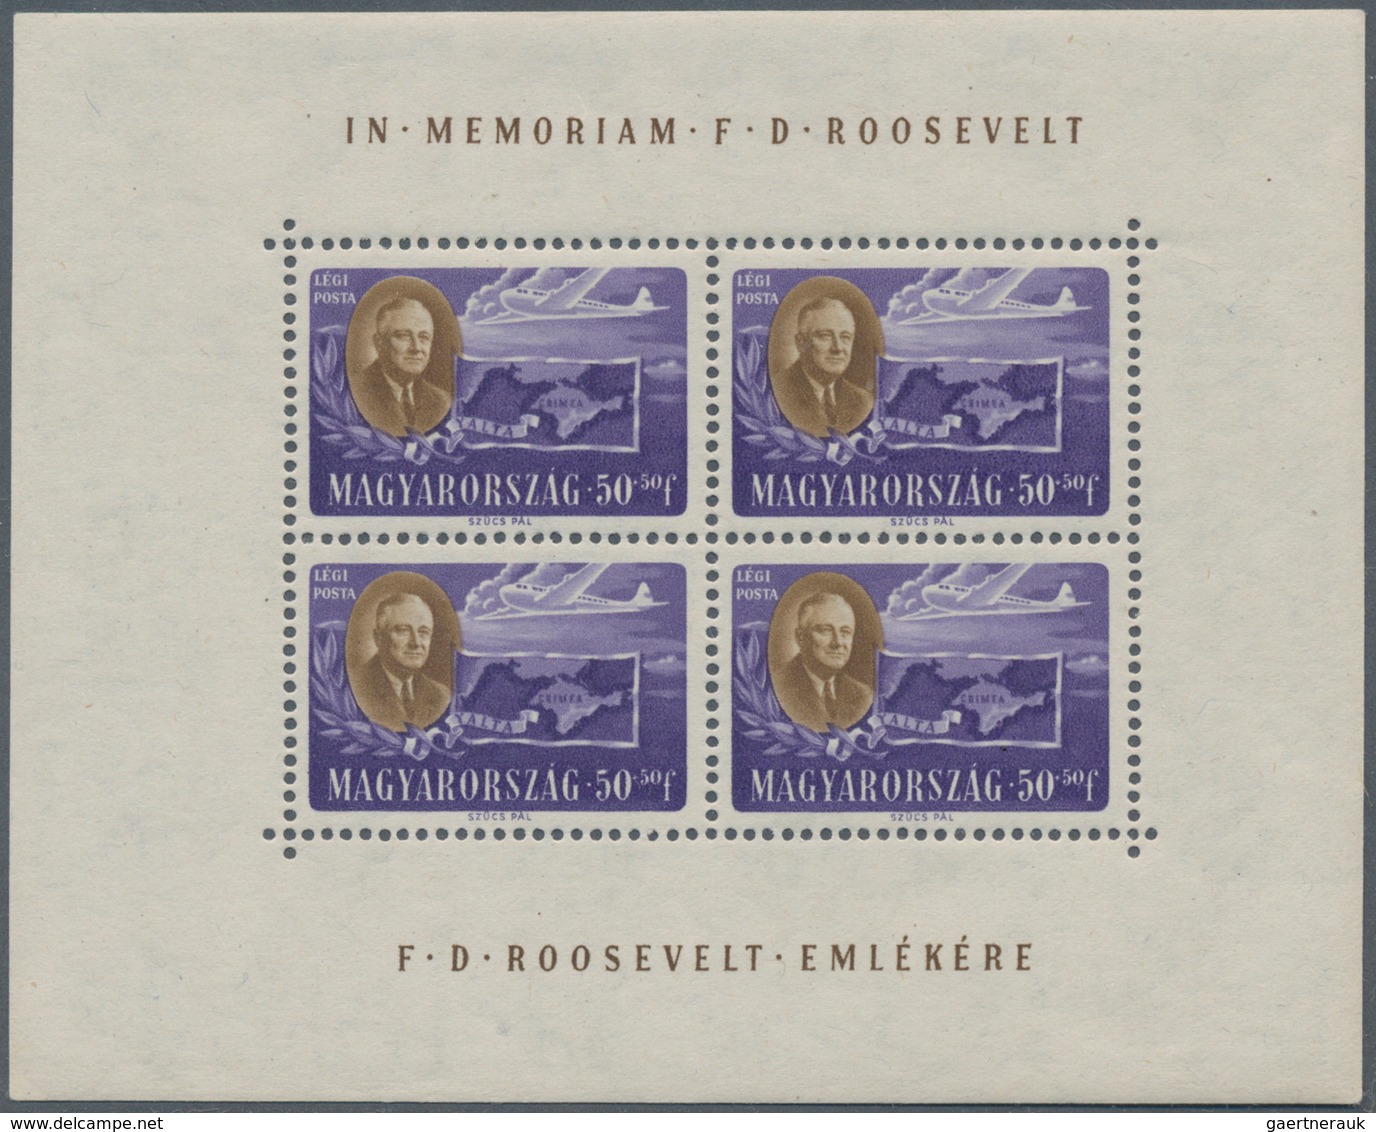 Ungarn: 1947, postfrische Kleinbogen "Präsident Roosevelt" gezähnt, 1x mit Randbugspur, (Mi.-E 450.-